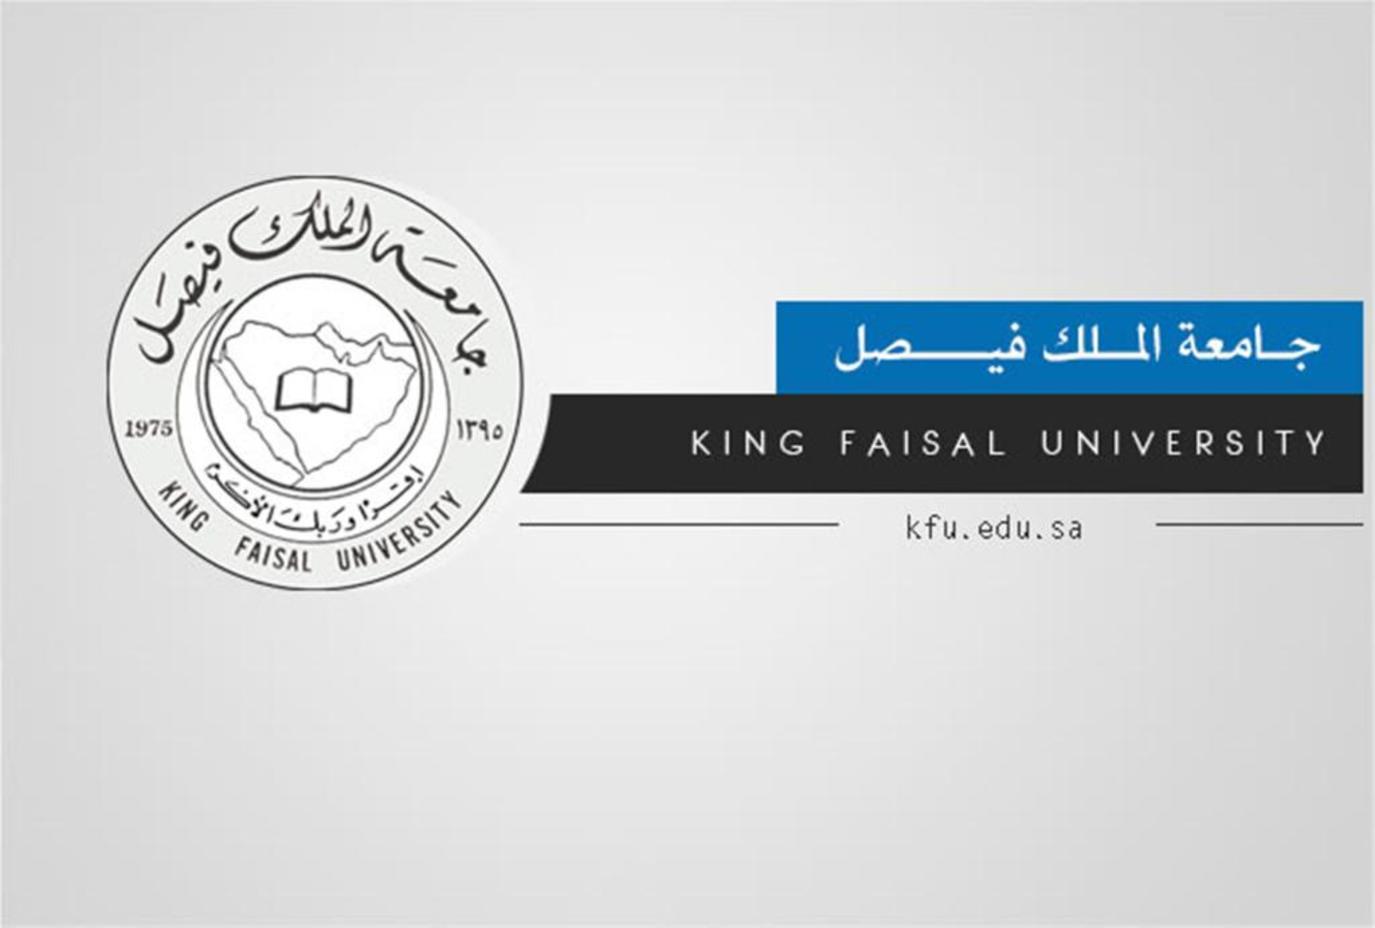 بوابة القبول الموحد جامعة الملك فيصل